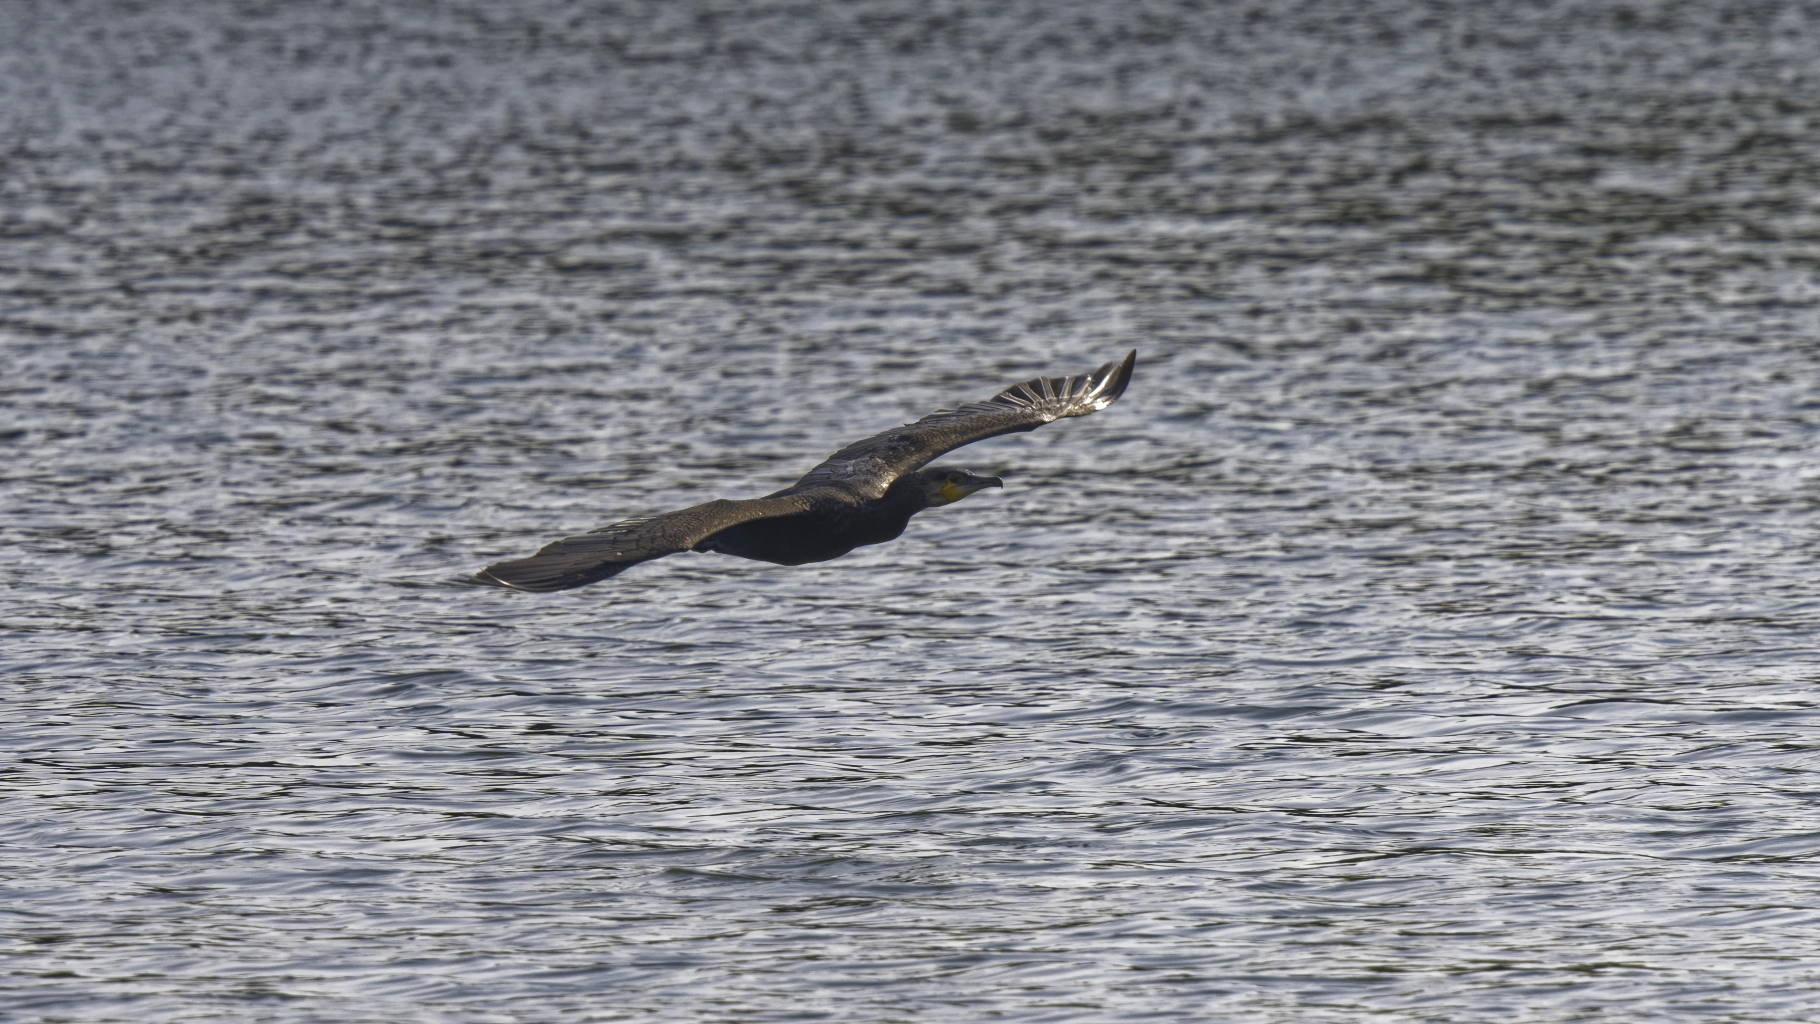 Cormoran en vol